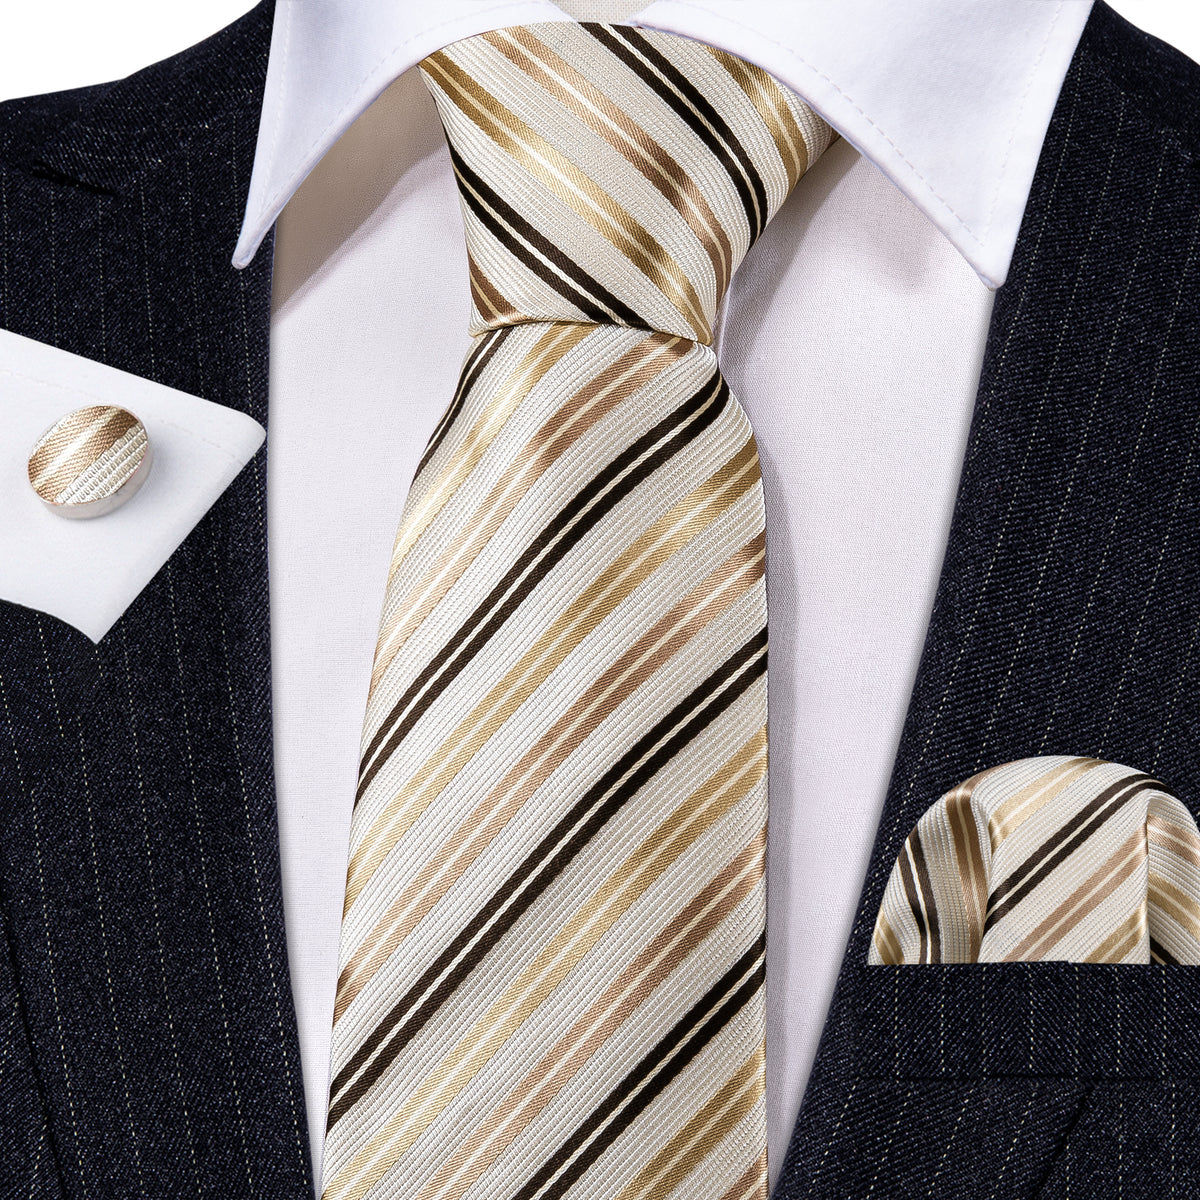 Men’s Silk Coordinated Tie Set - Brown Gold Beige Striped (5434)